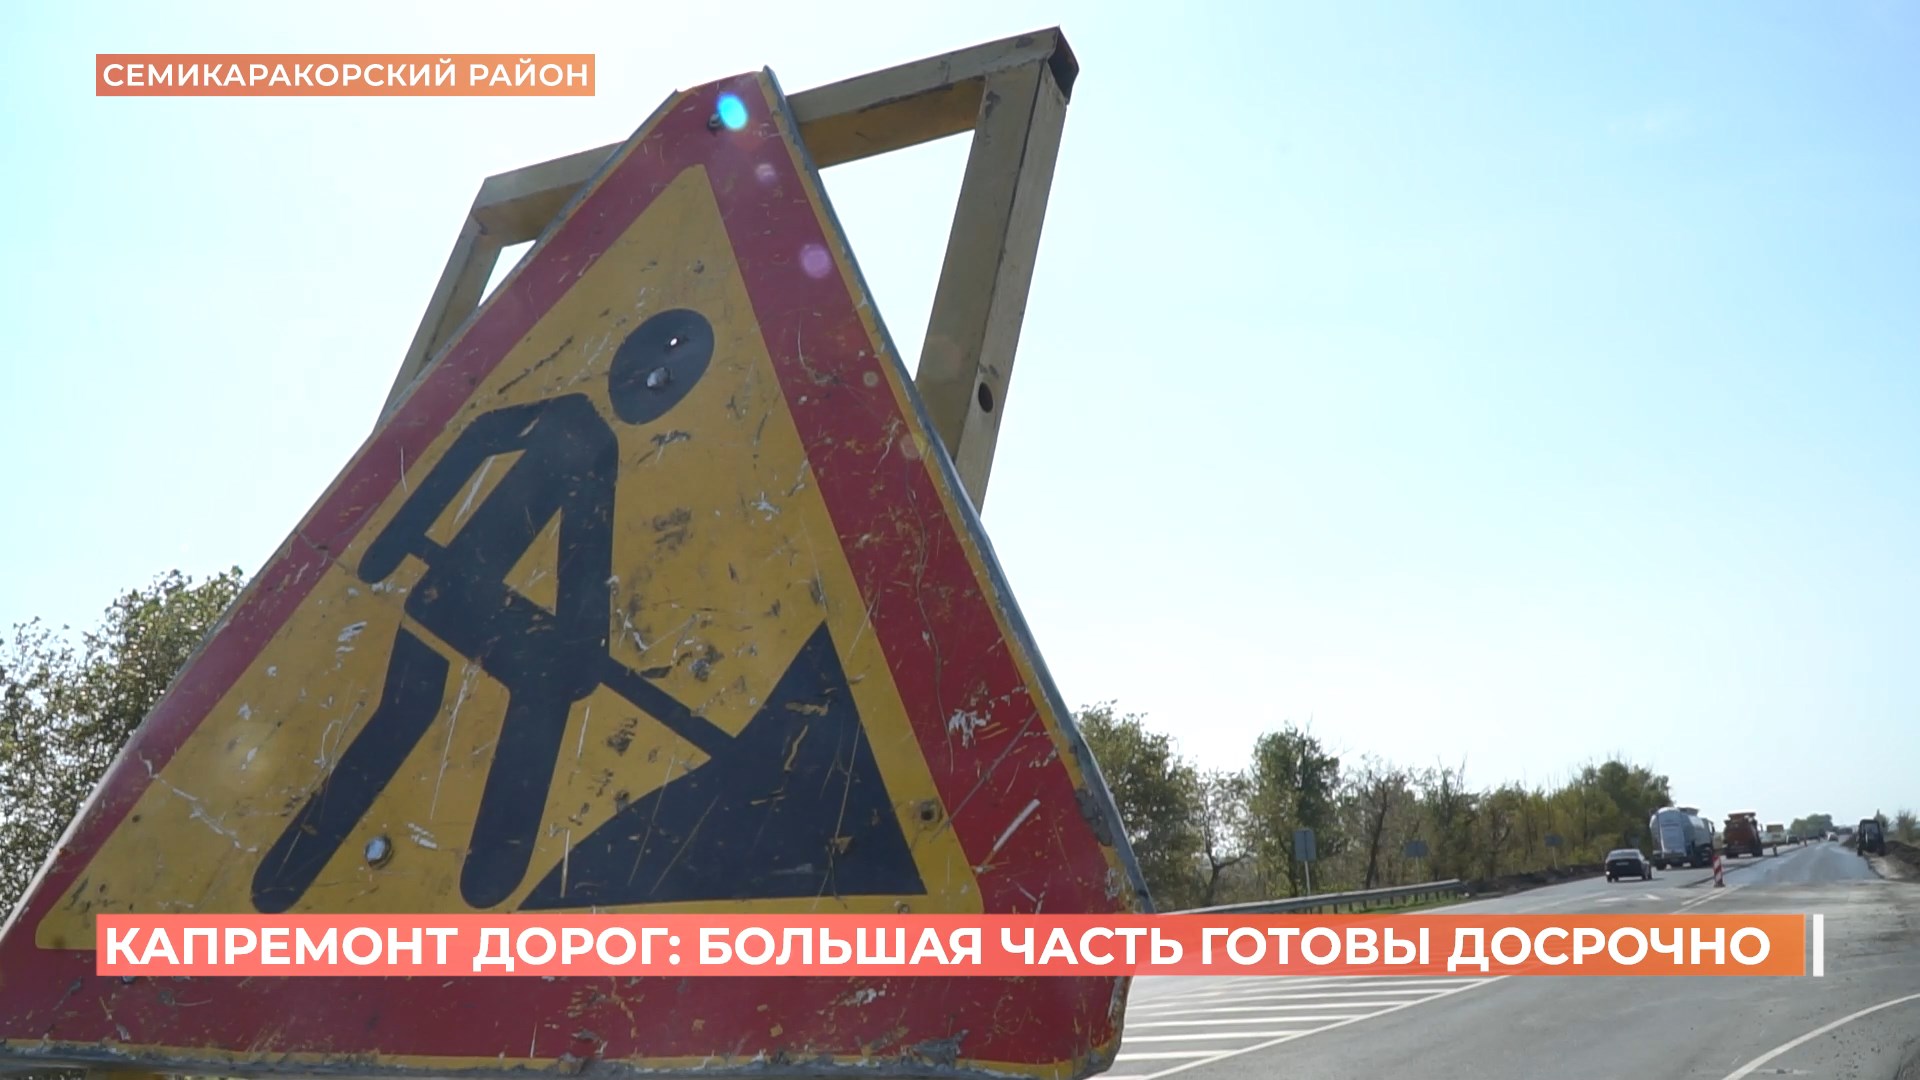 Капремонт дорог в Ростовской области: большая часть готовы досрочно